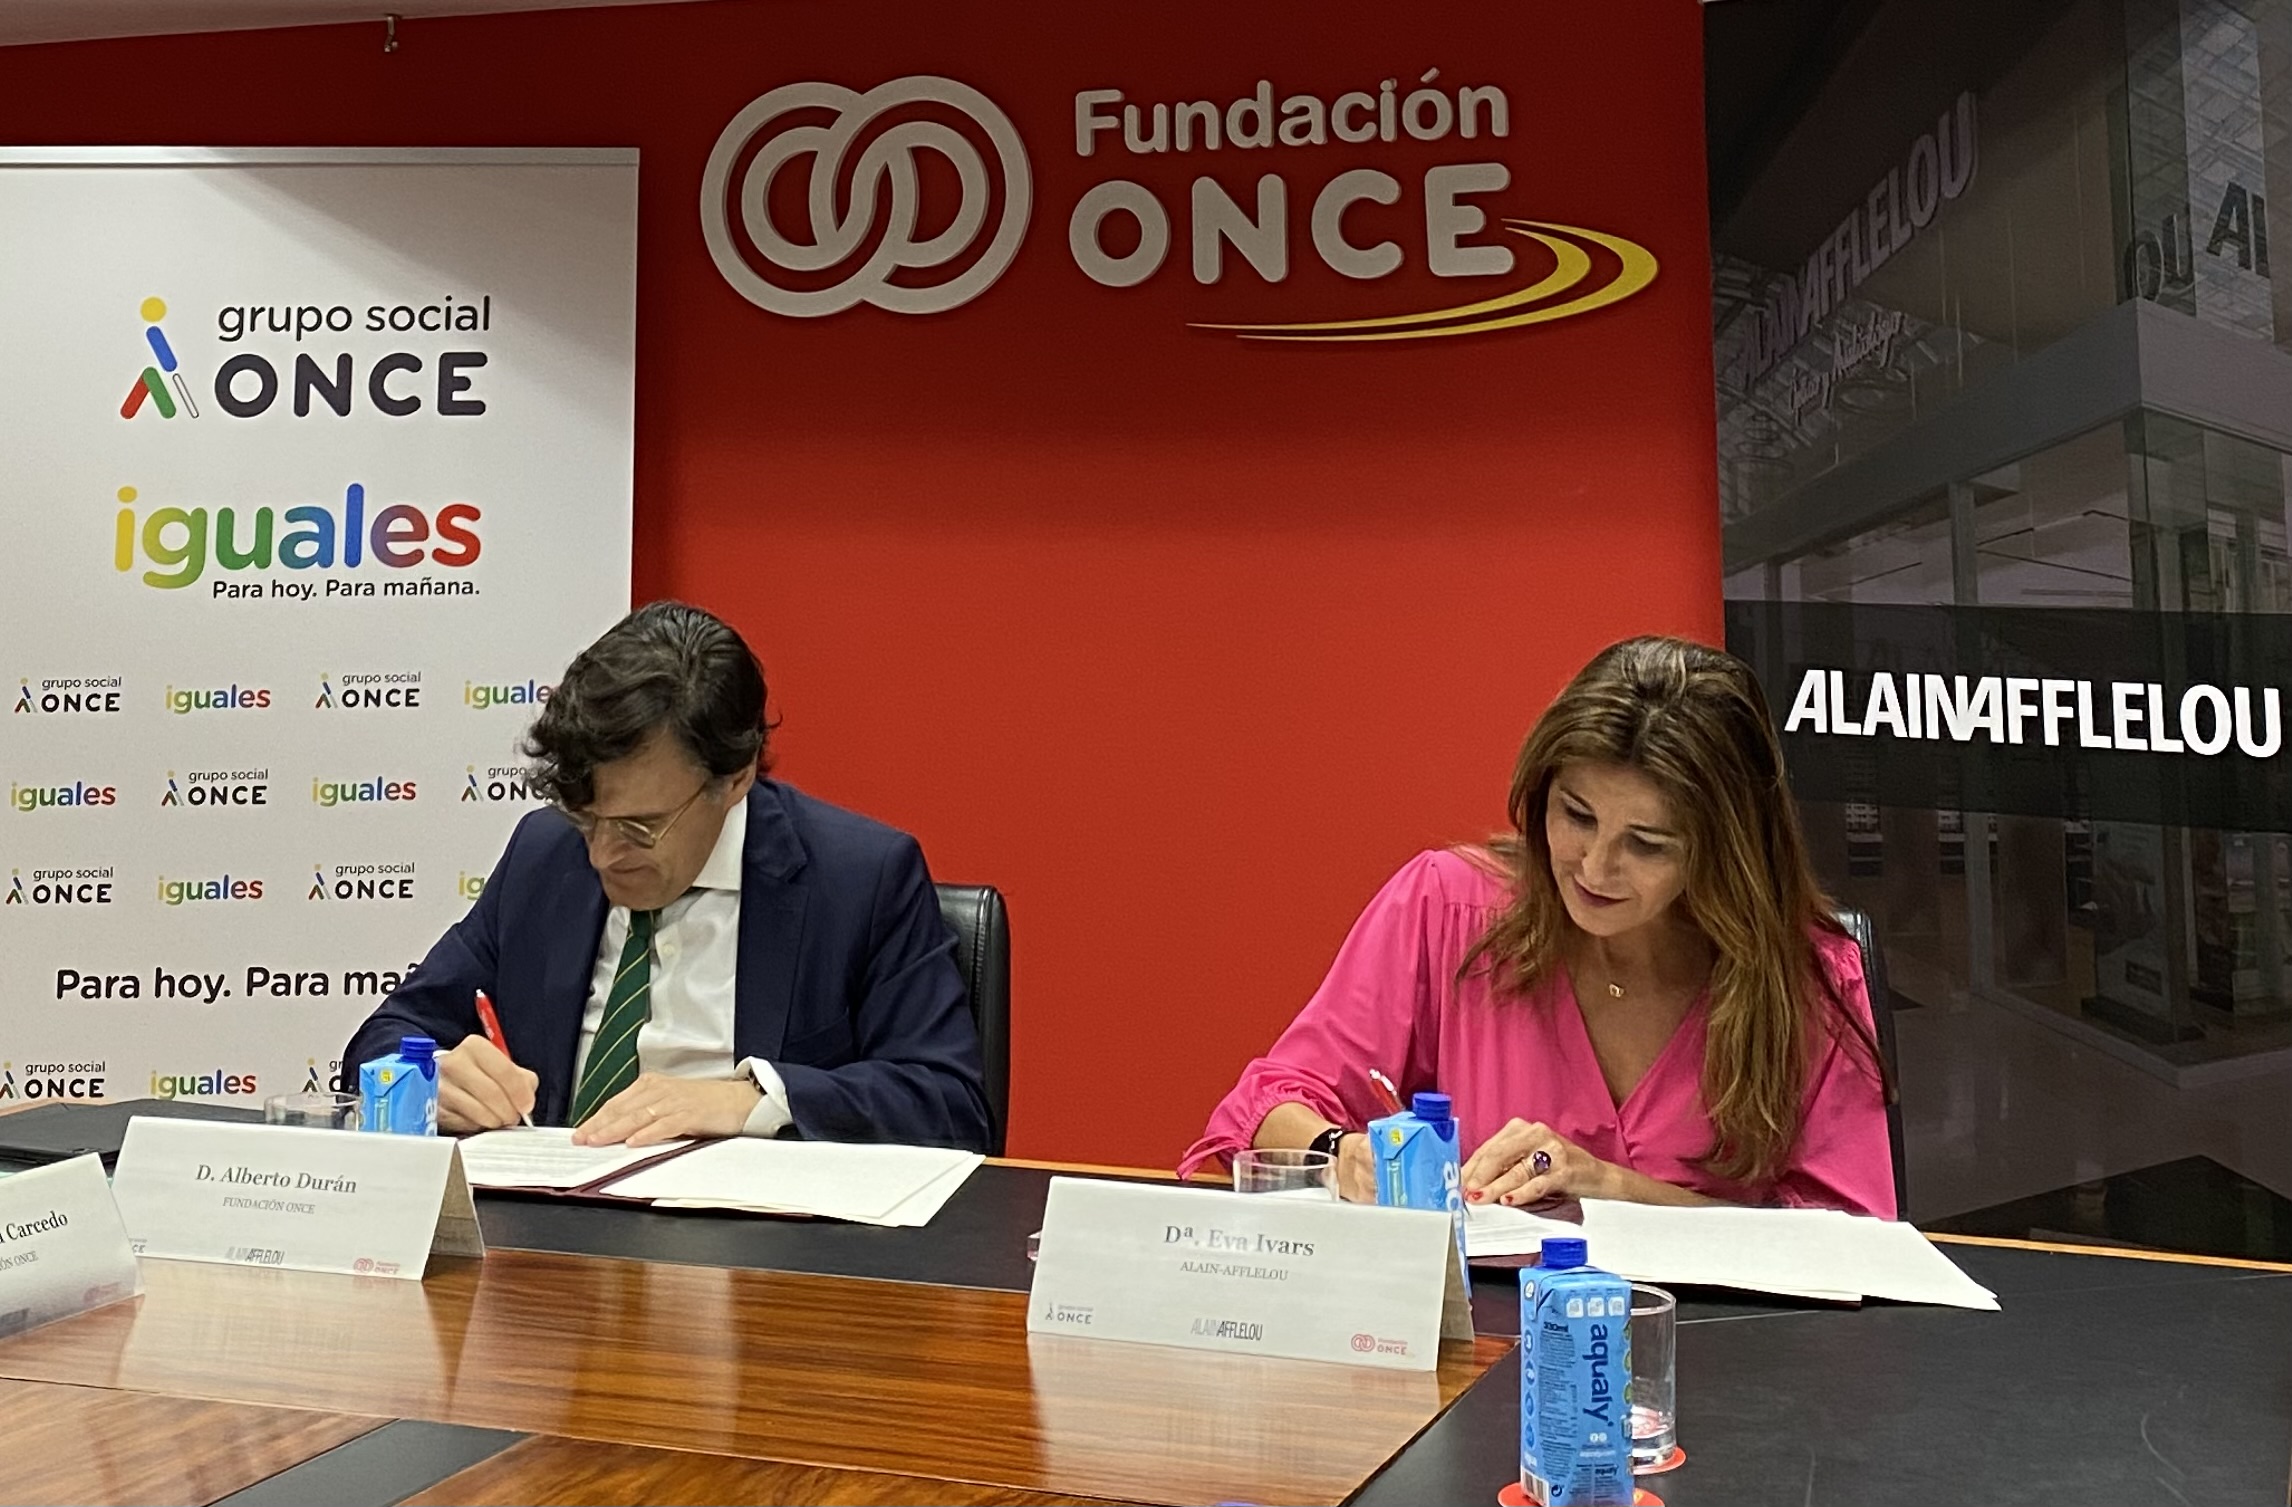 ¡ALAIN AFFLELOU España y Fundación ONCE Firman un Convenio para Impulsar la Inclusión Laboral!